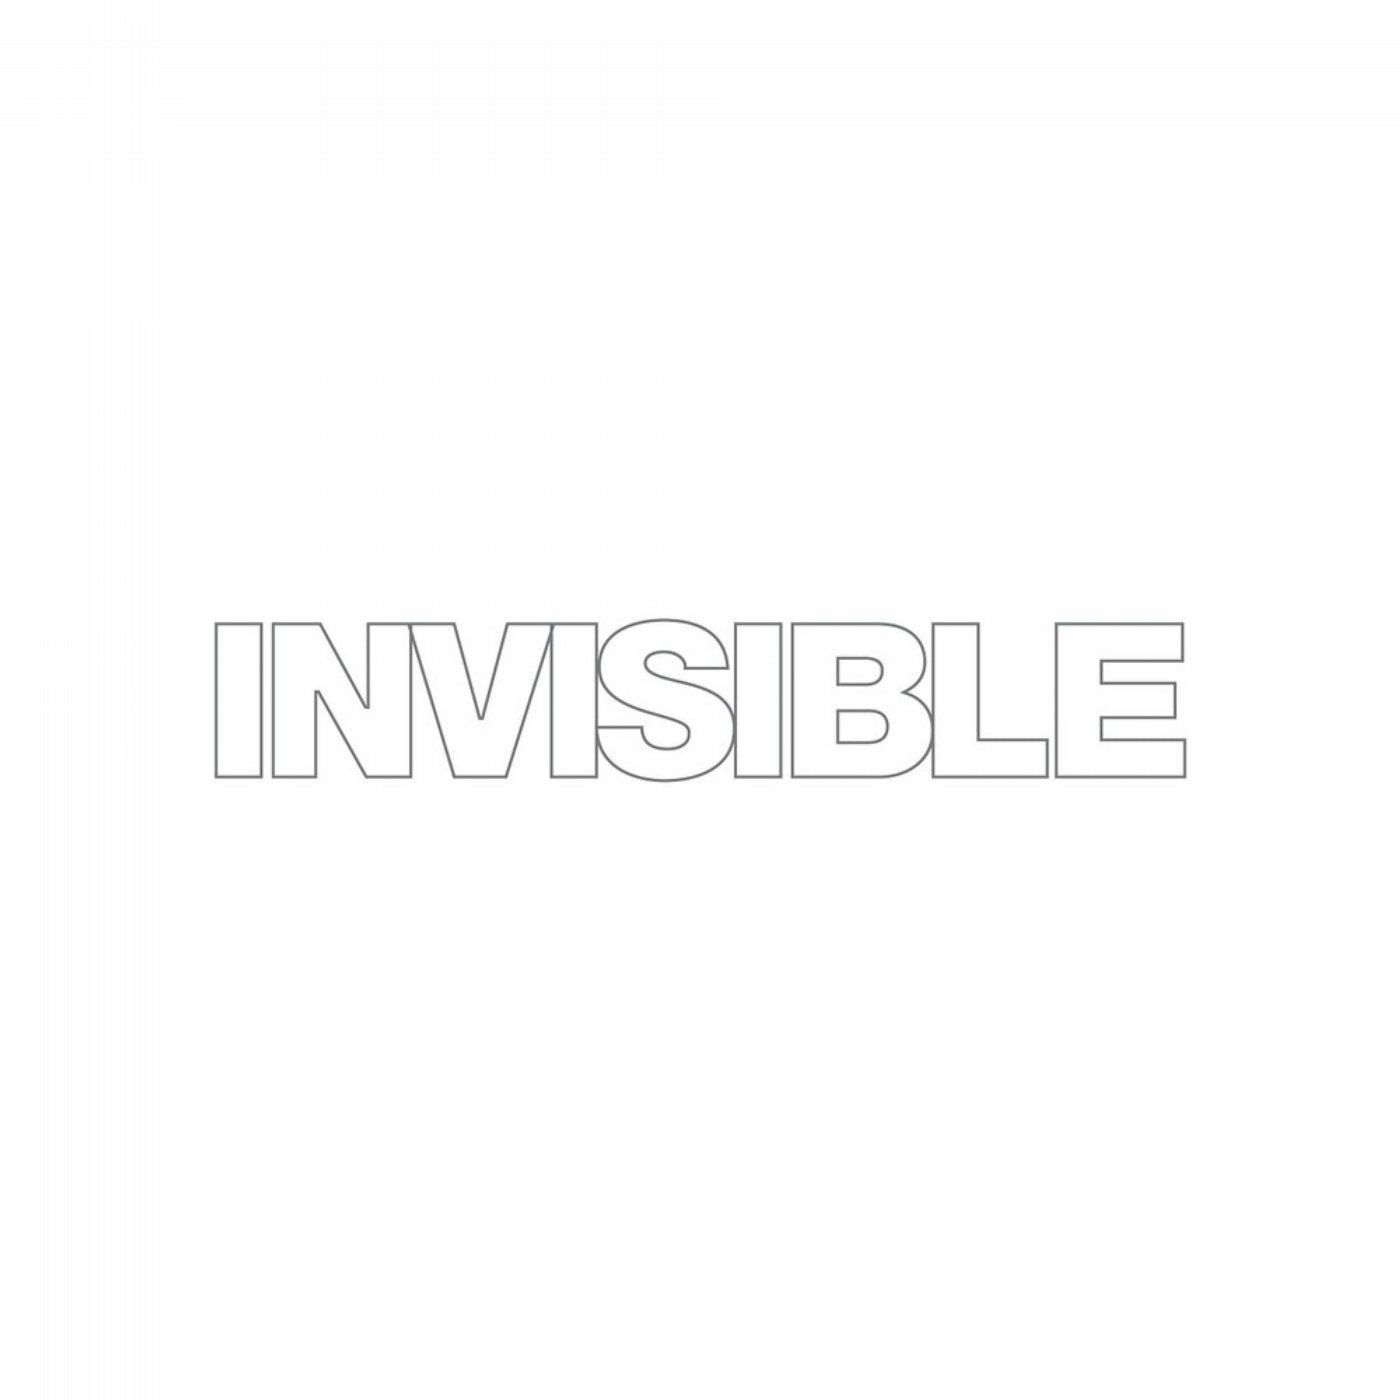 Invisible 018